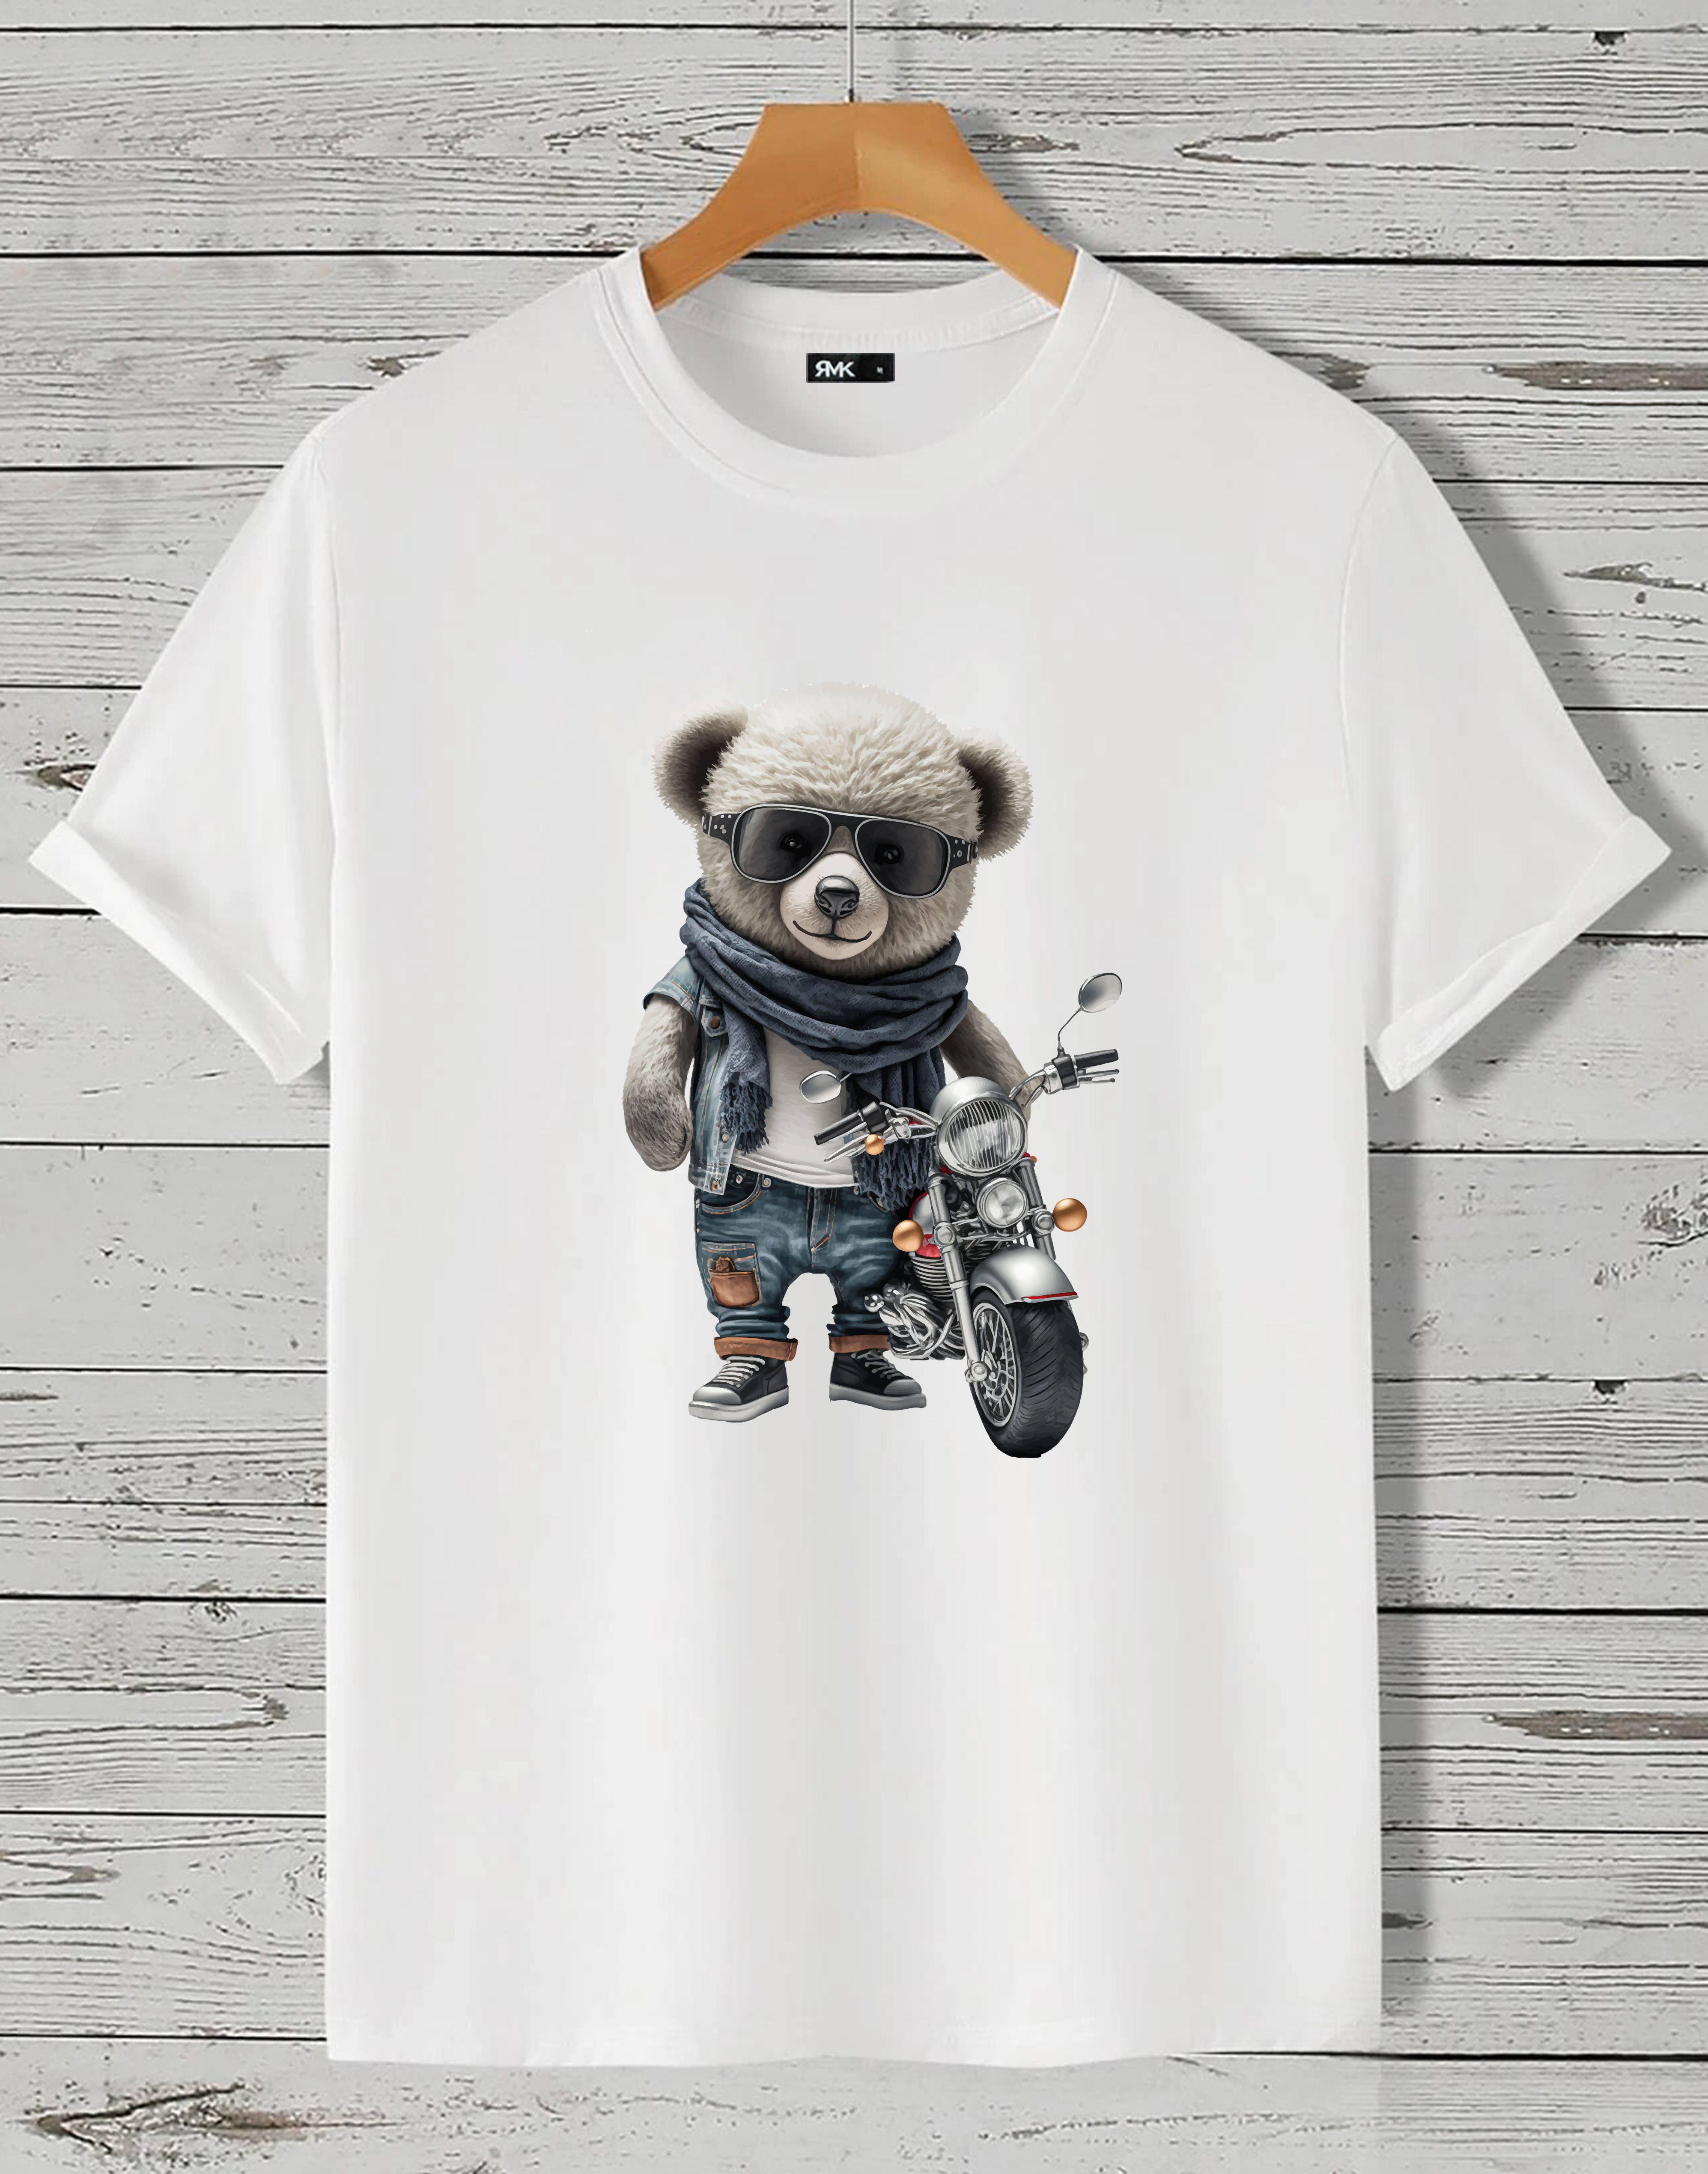 Bestpreis RMK T-Shirt Weiß Herren Rundhals T-Shirt Motorrad Teddybär mit